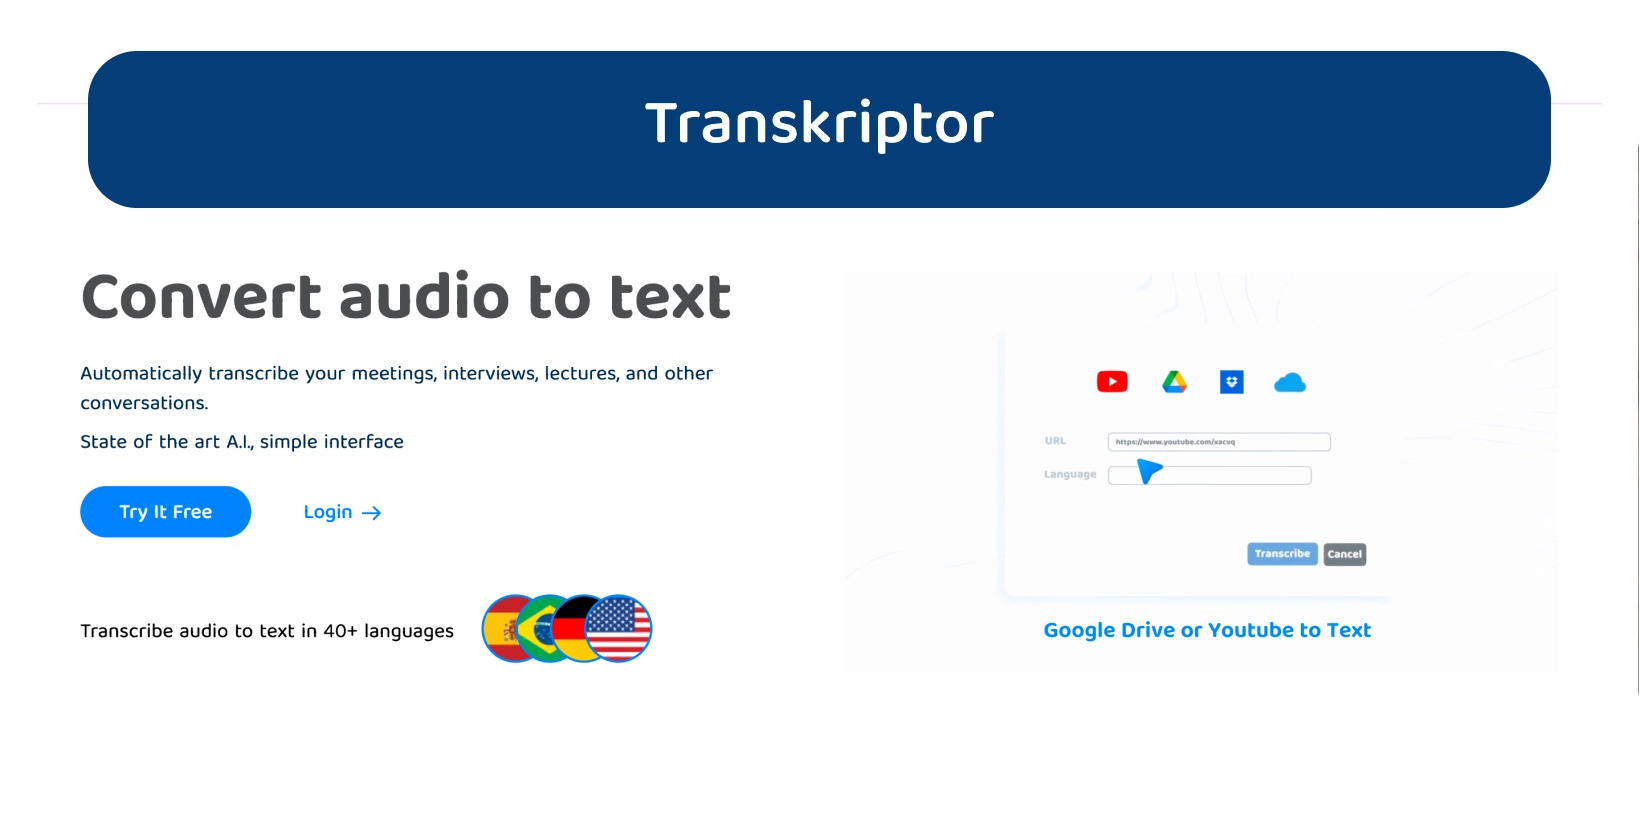 La dashboard di Transkriptor mostra le sue funzionalità di conversione da audio a testo per una trascrizione efficiente.